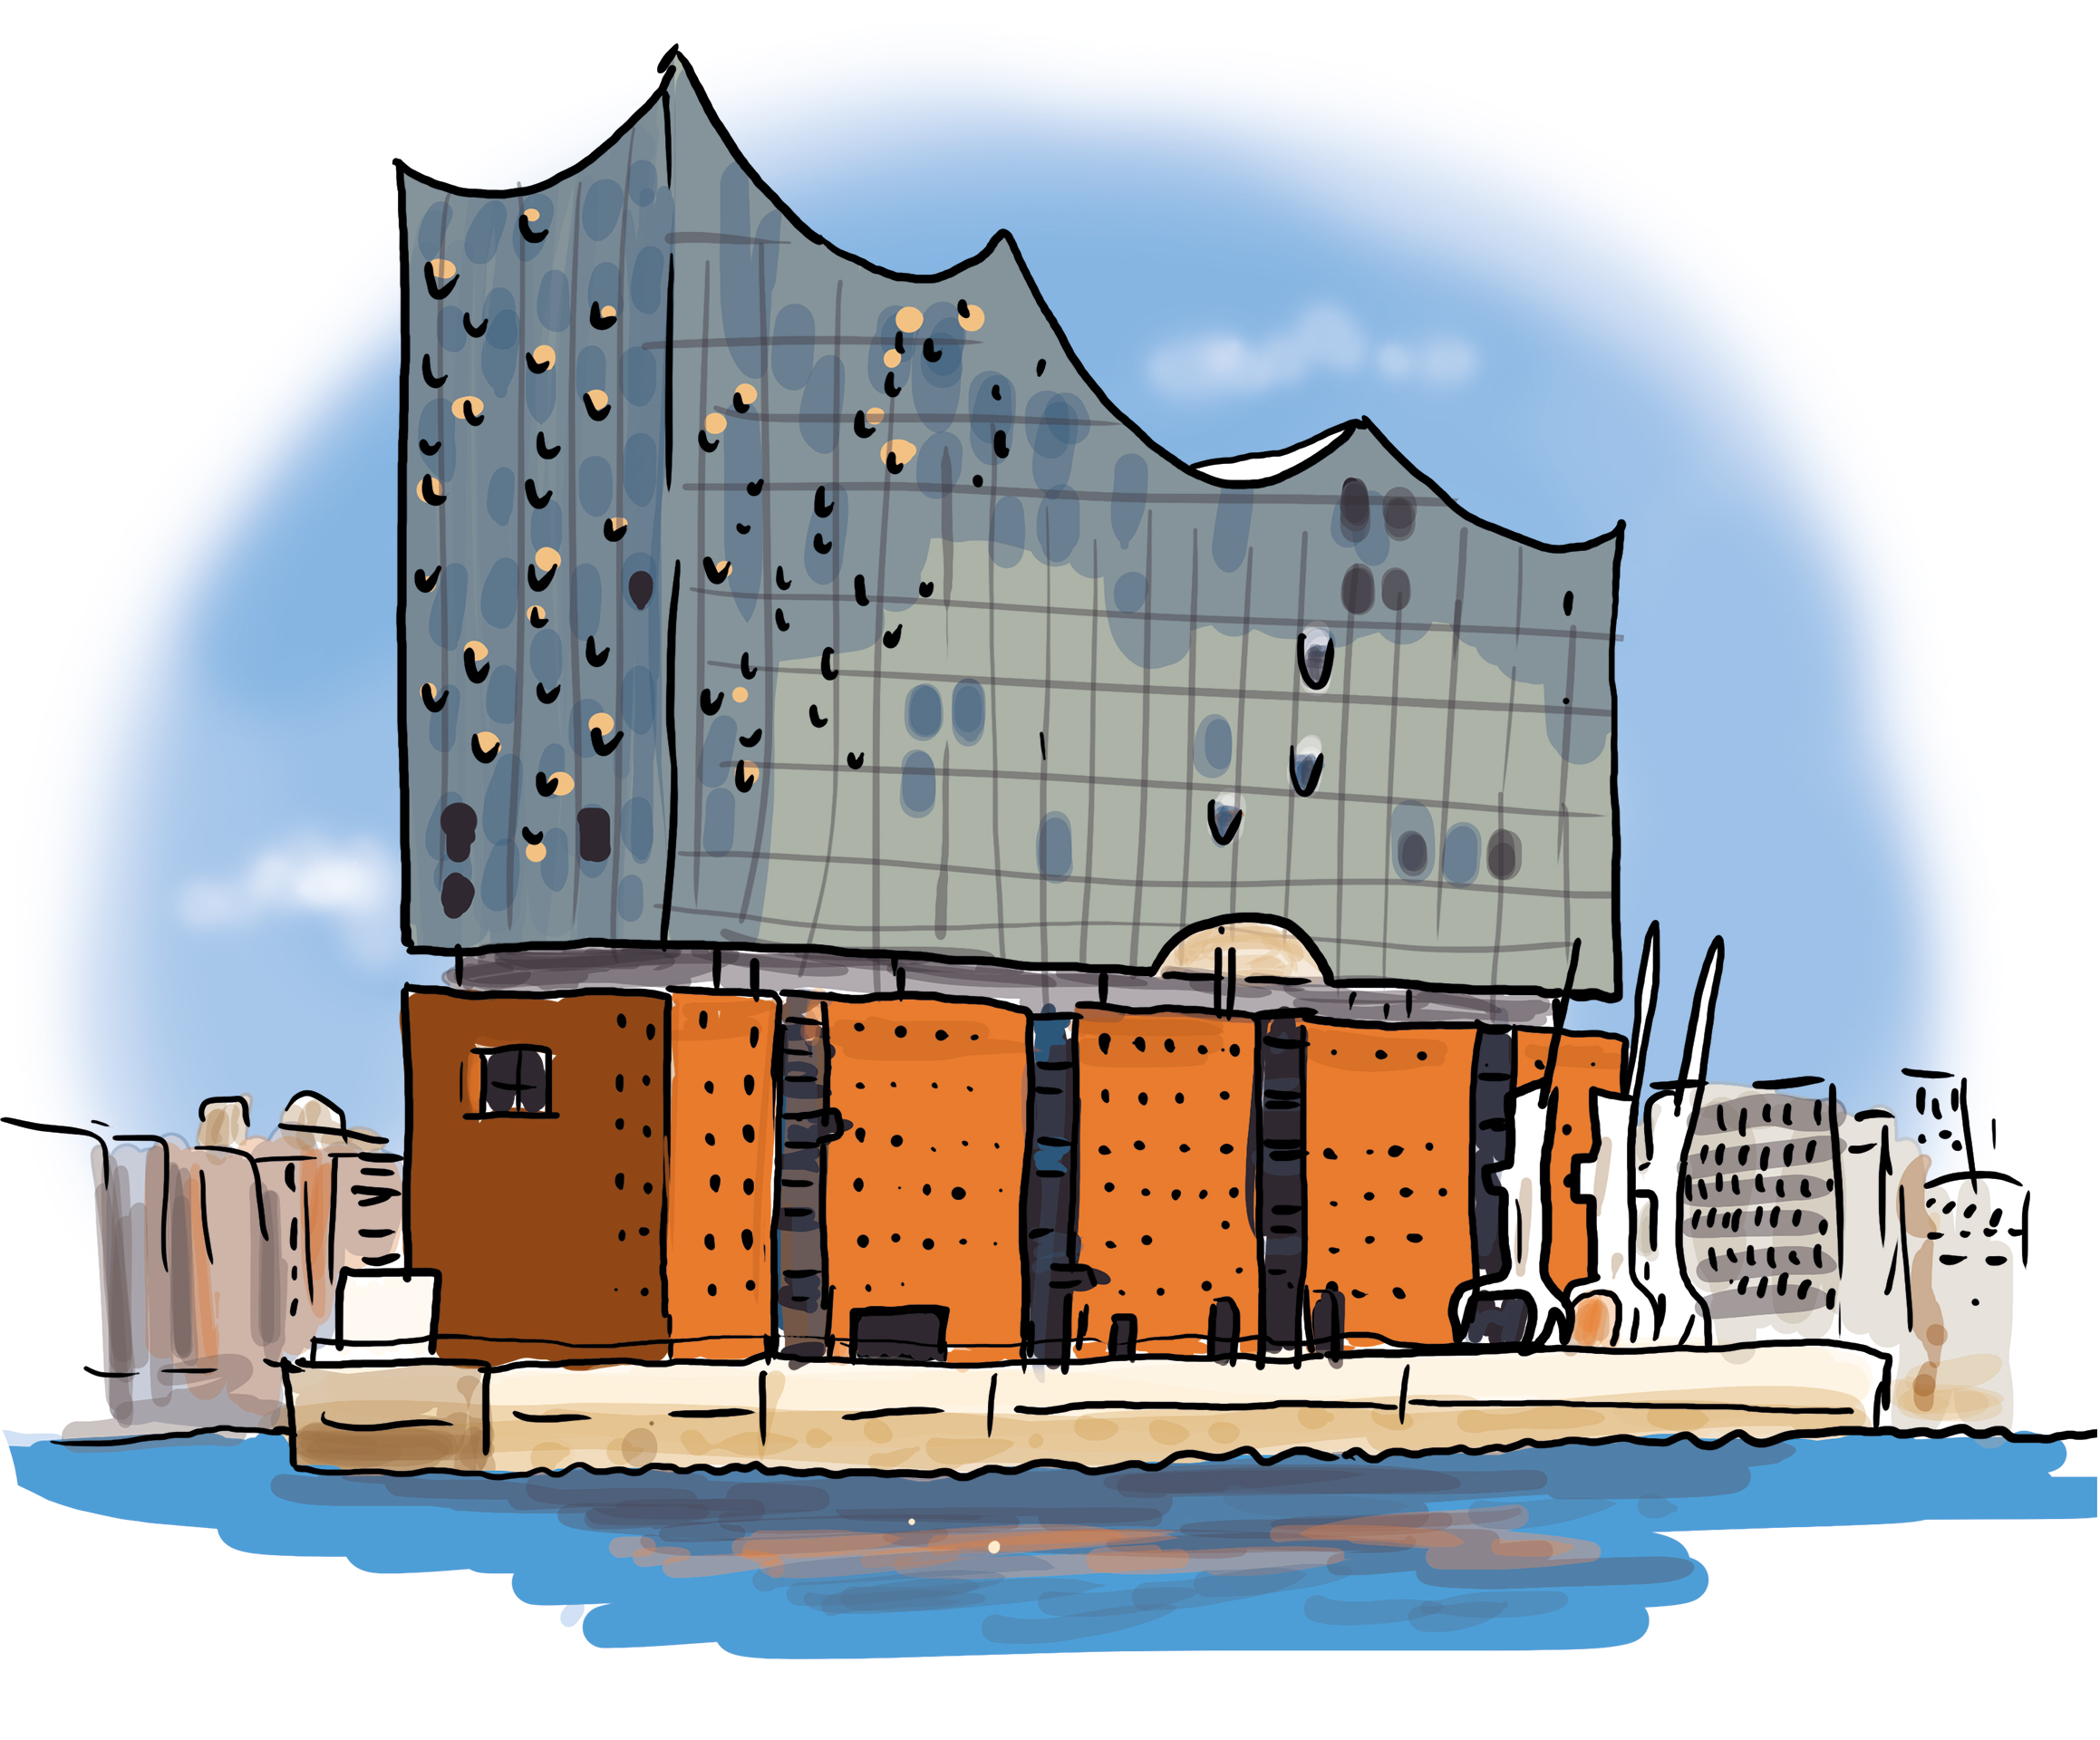 Die Elbphilharmonie in Hamburg